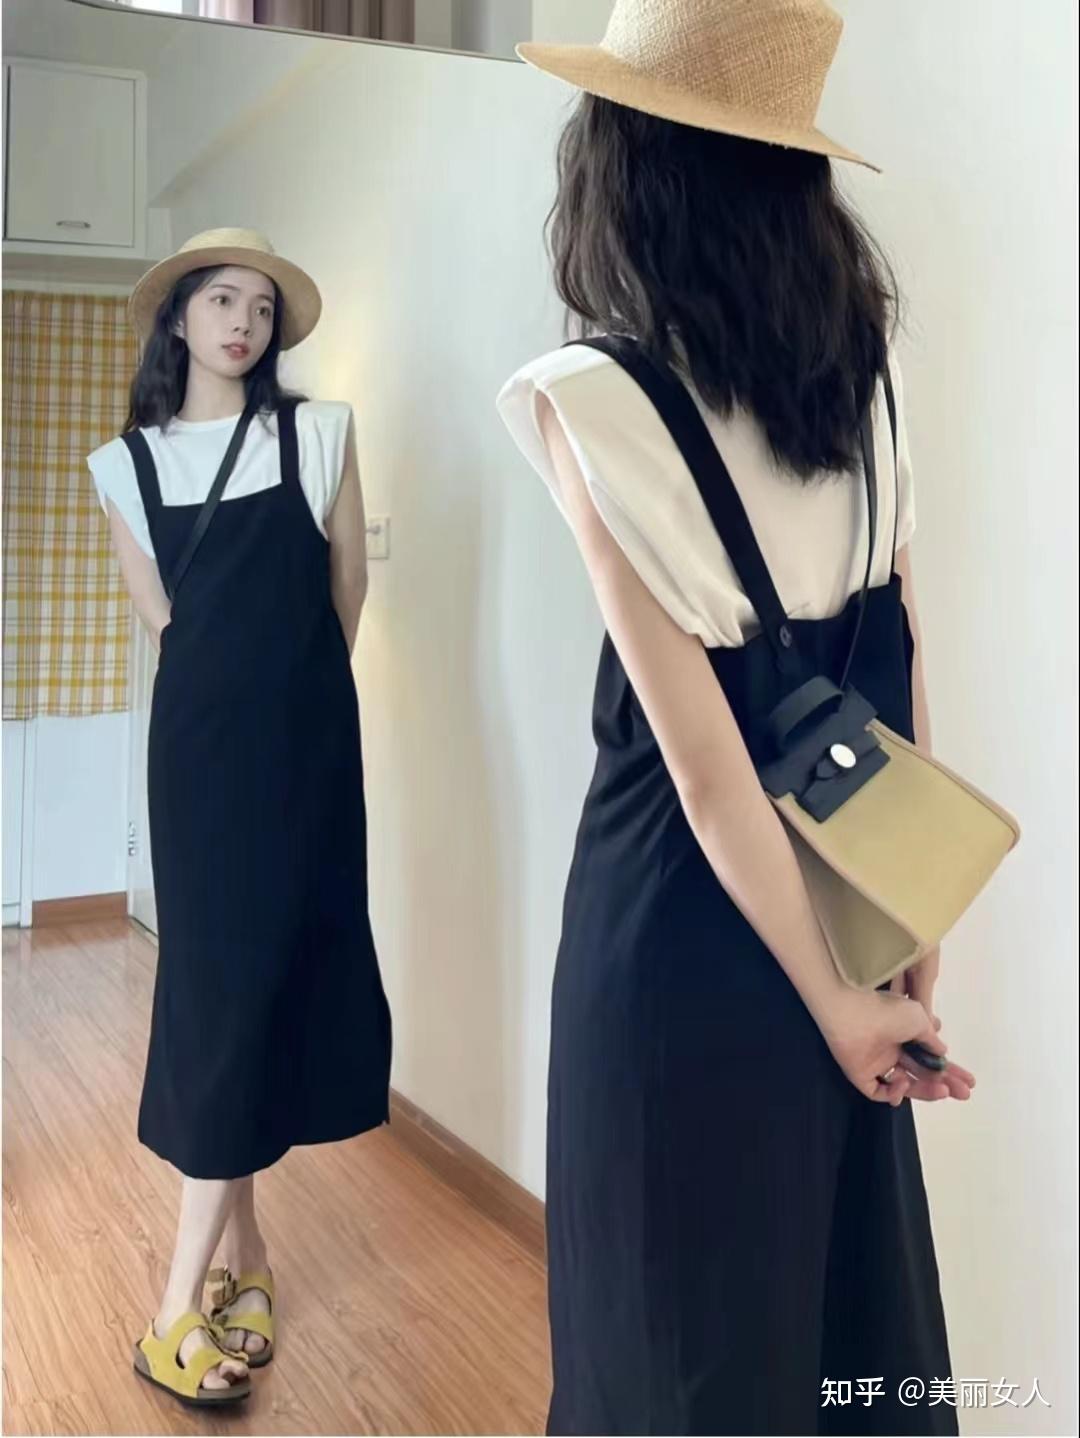 值得拥有的经典小黑裙 - NUYOU SINGAPORE《女友》 - 最时尚中文杂志